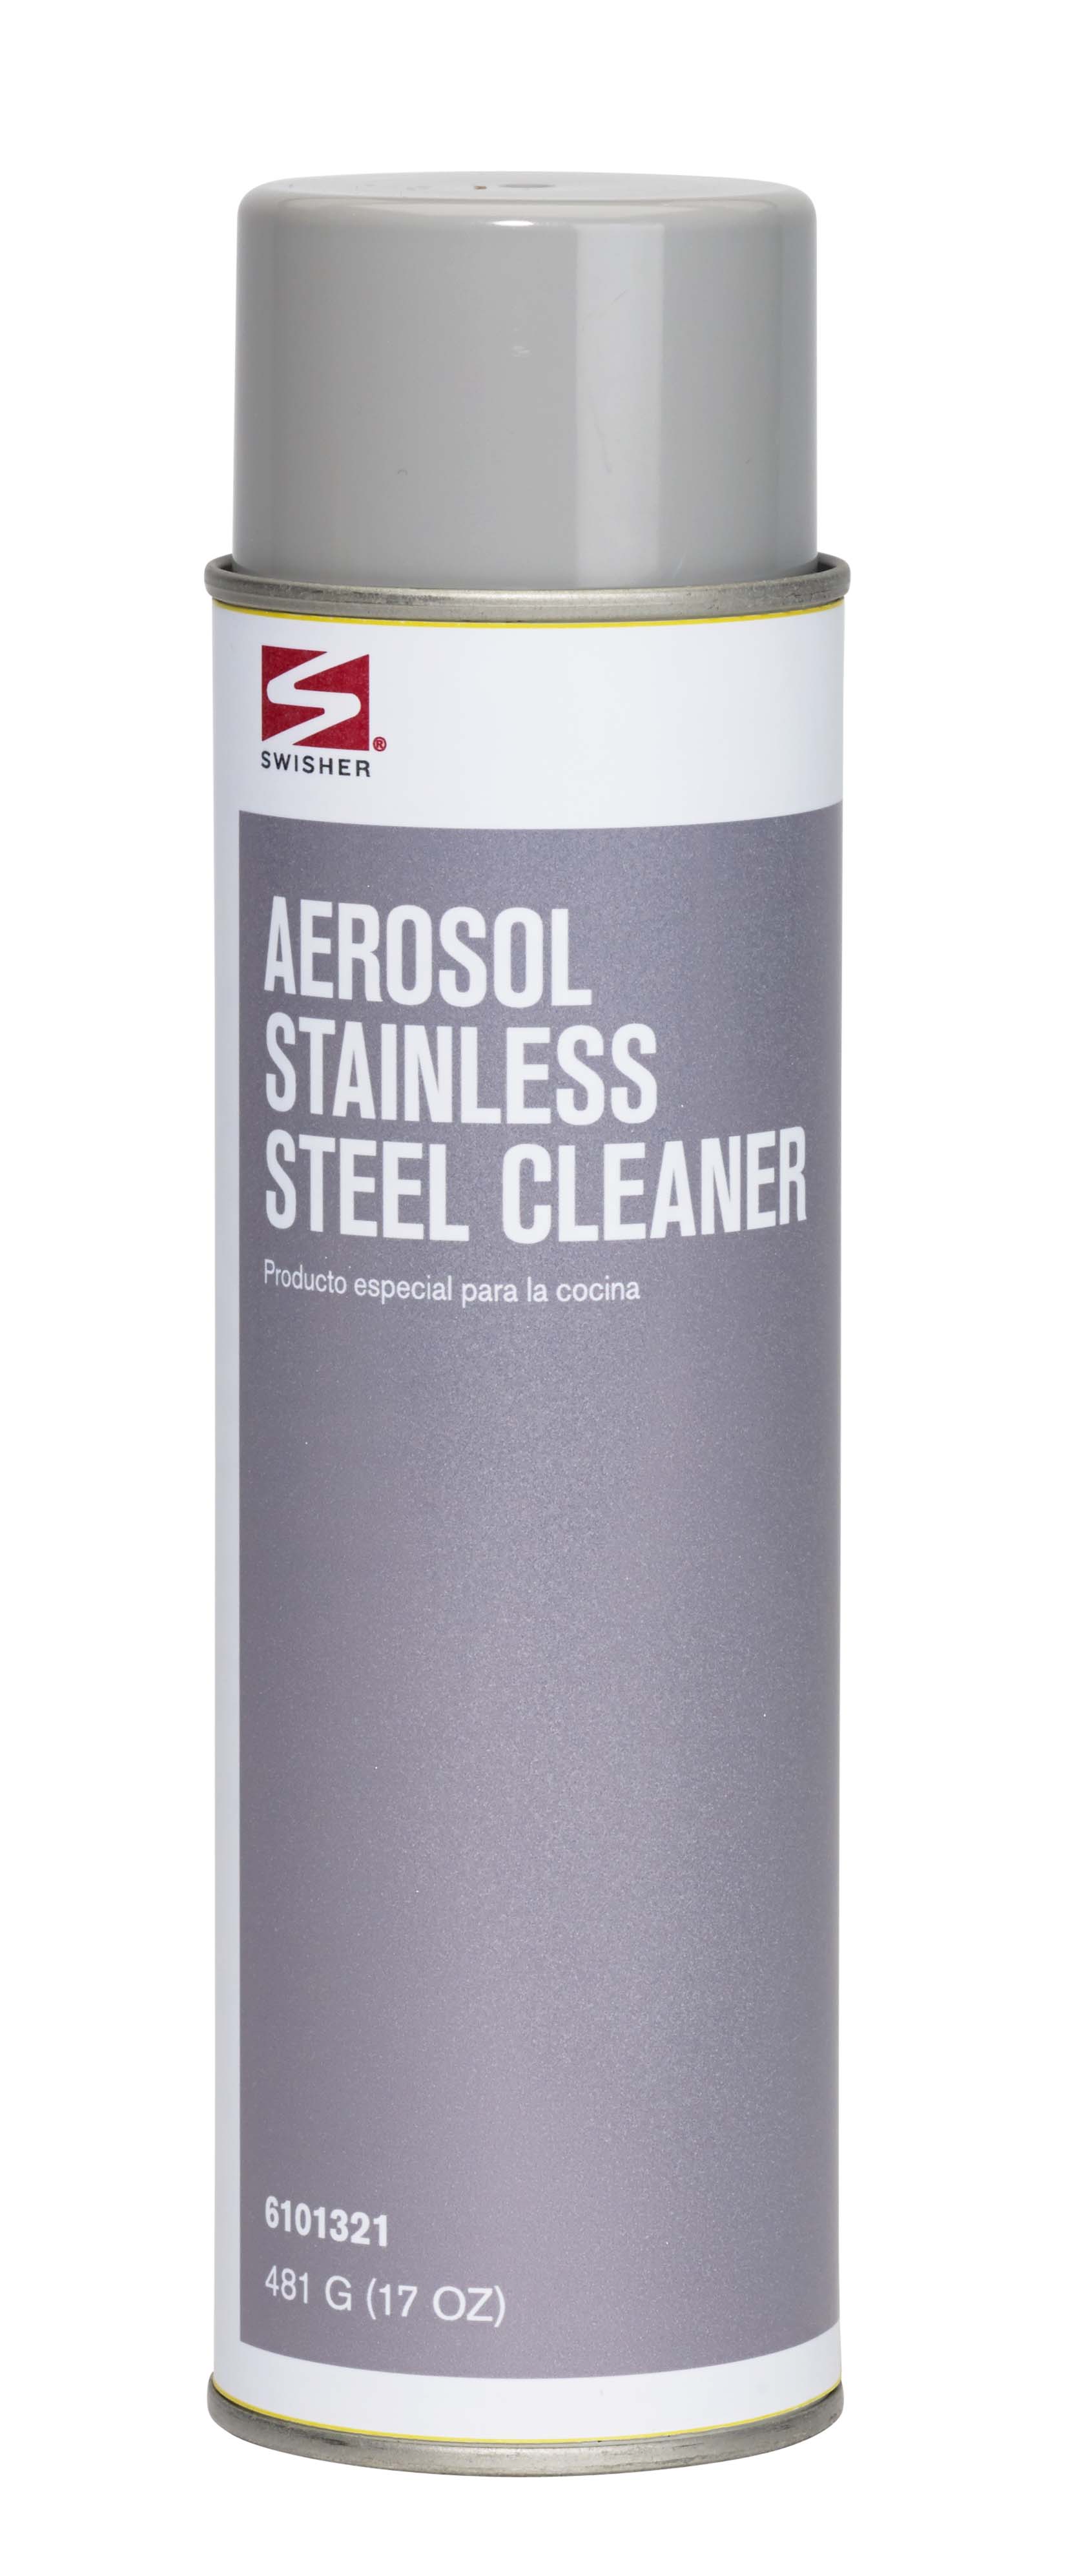 Stainless Steel Cleaner Polish Veslee Aerosol Spray Stainless Steel Chrome  & Aluminium Cleaner Polish 450ml